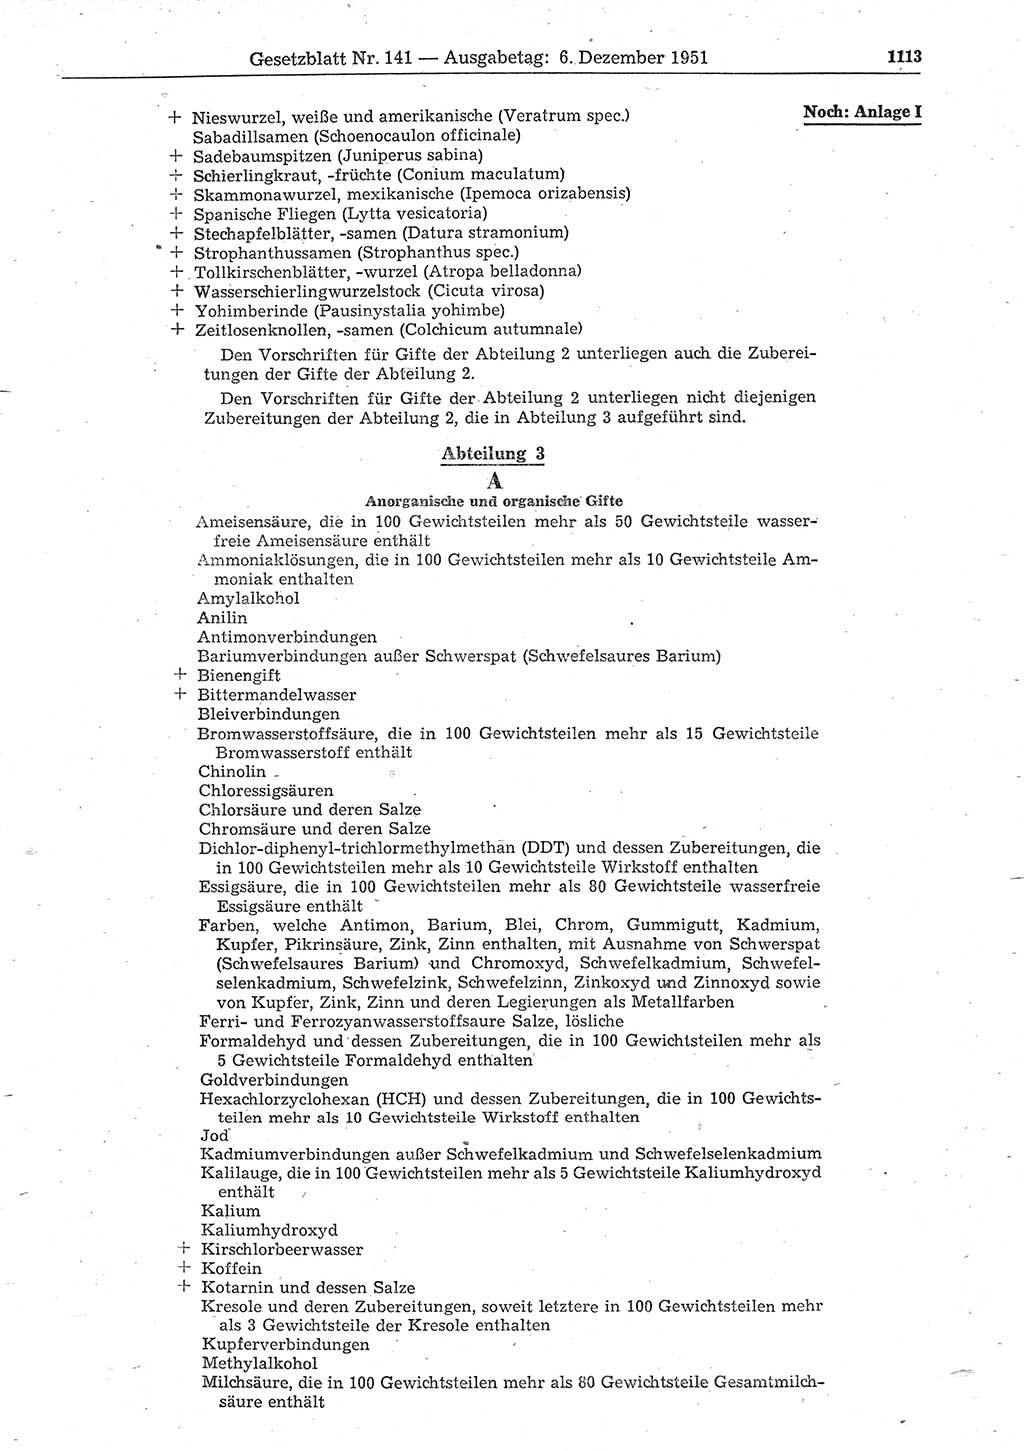 Gesetzblatt (GBl.) der Deutschen Demokratischen Republik (DDR) 1951, Seite 1113 (GBl. DDR 1951, S. 1113)